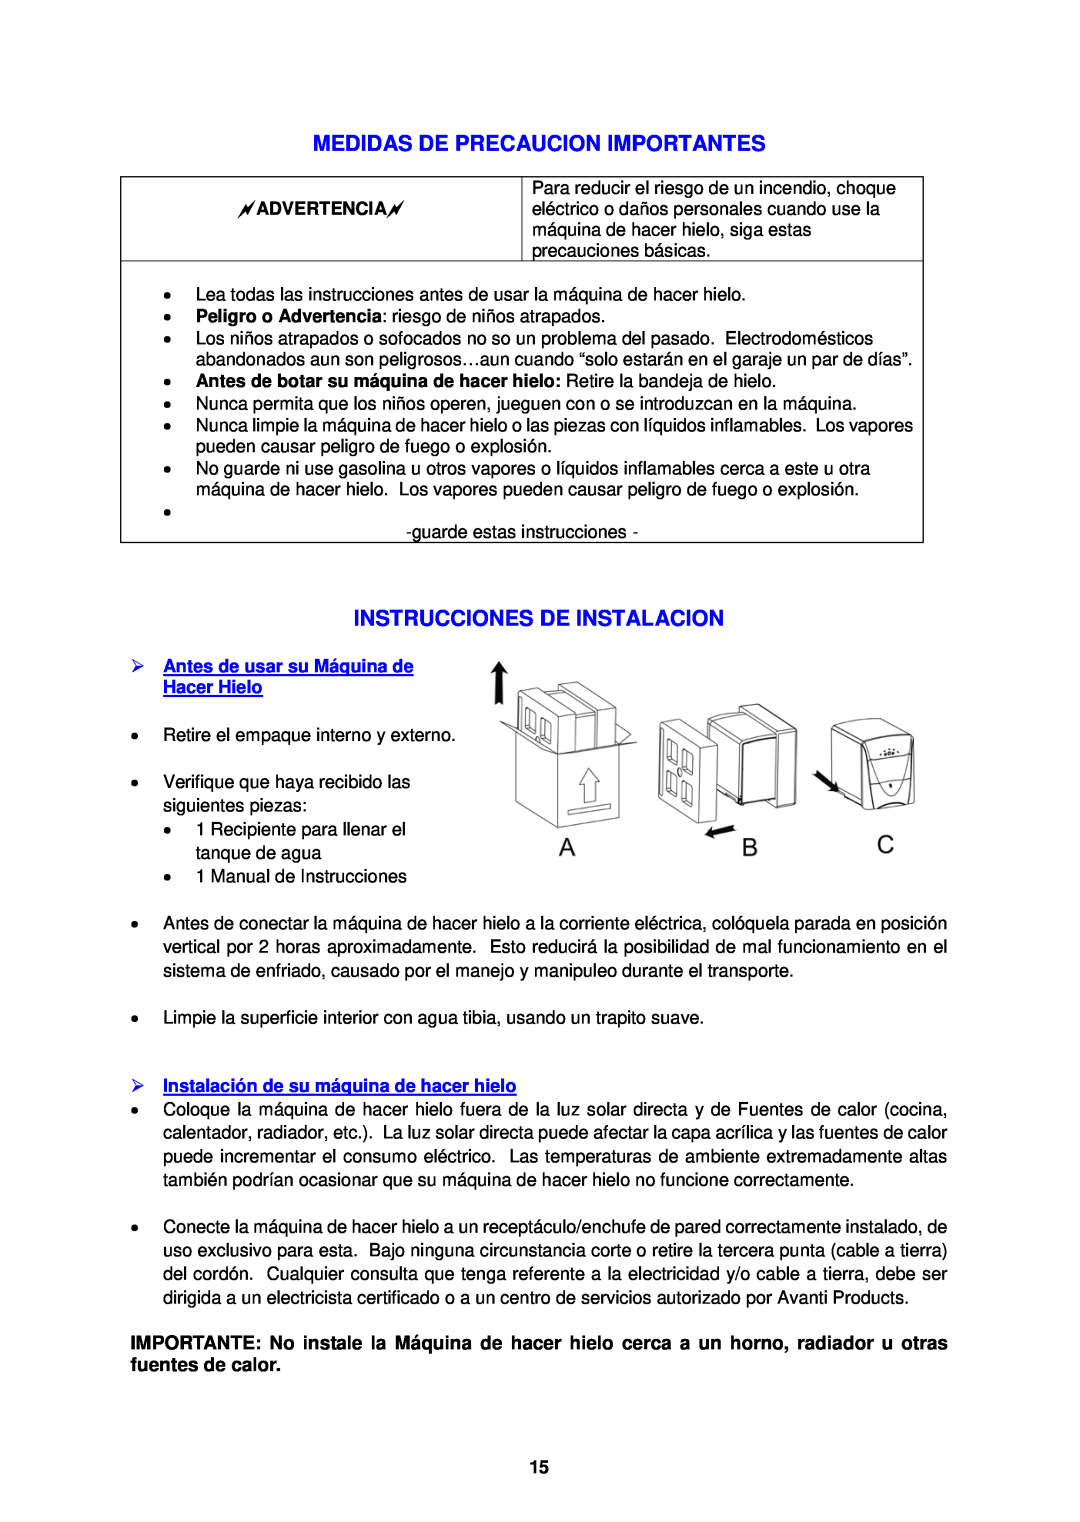 Avanti PIM25SS instruction manual Medidas De Precaucion Importantes, Instrucciones De Instalacion, Advertencia 